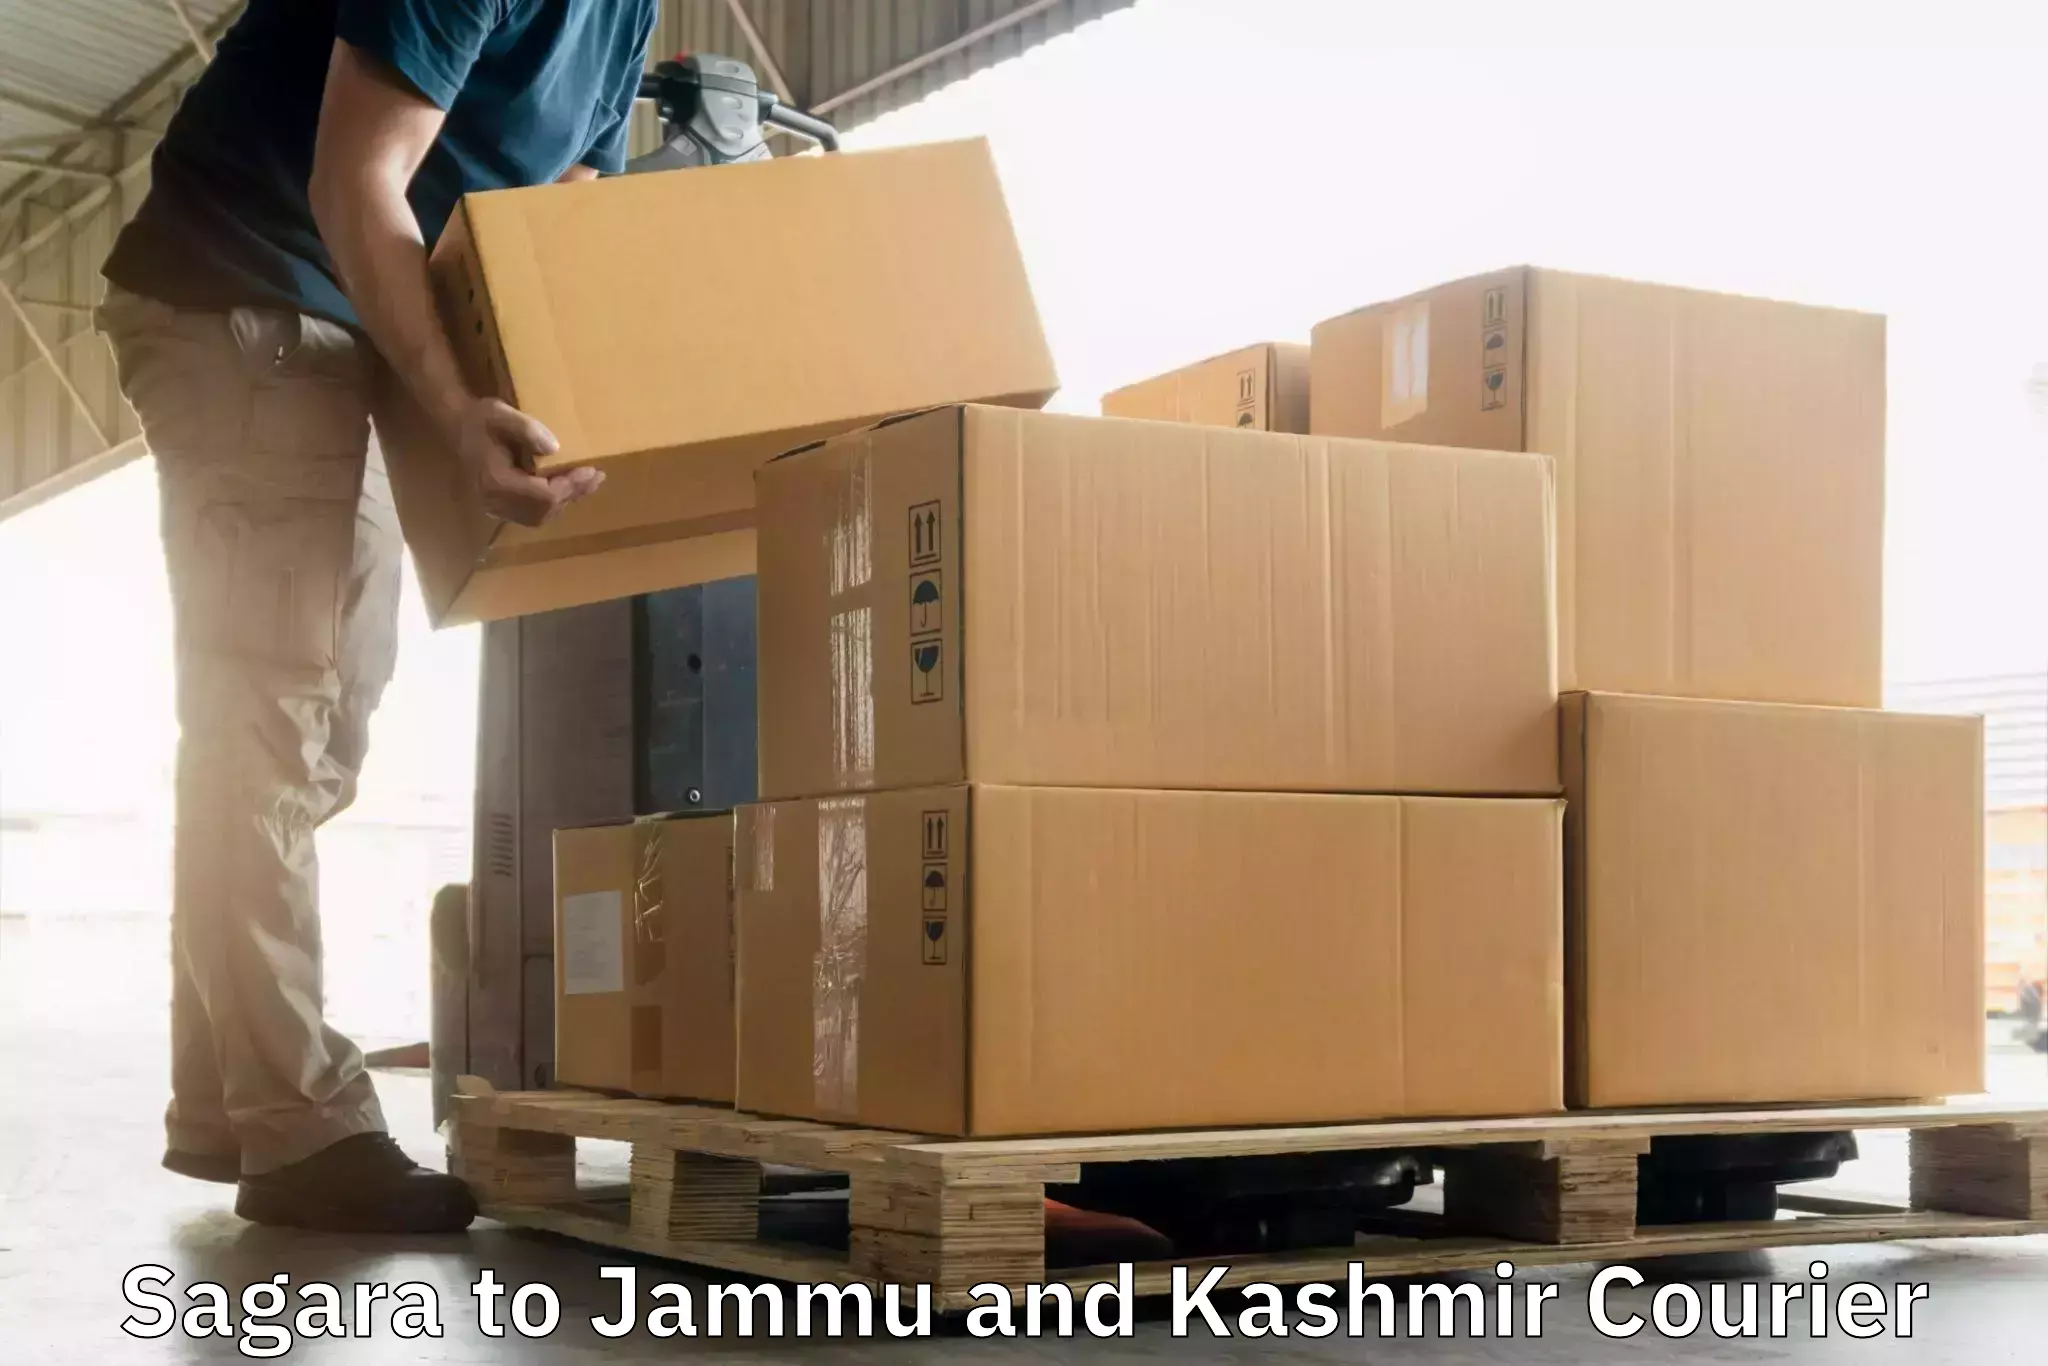 Door-to-door freight service Sagara to Jammu and Kashmir